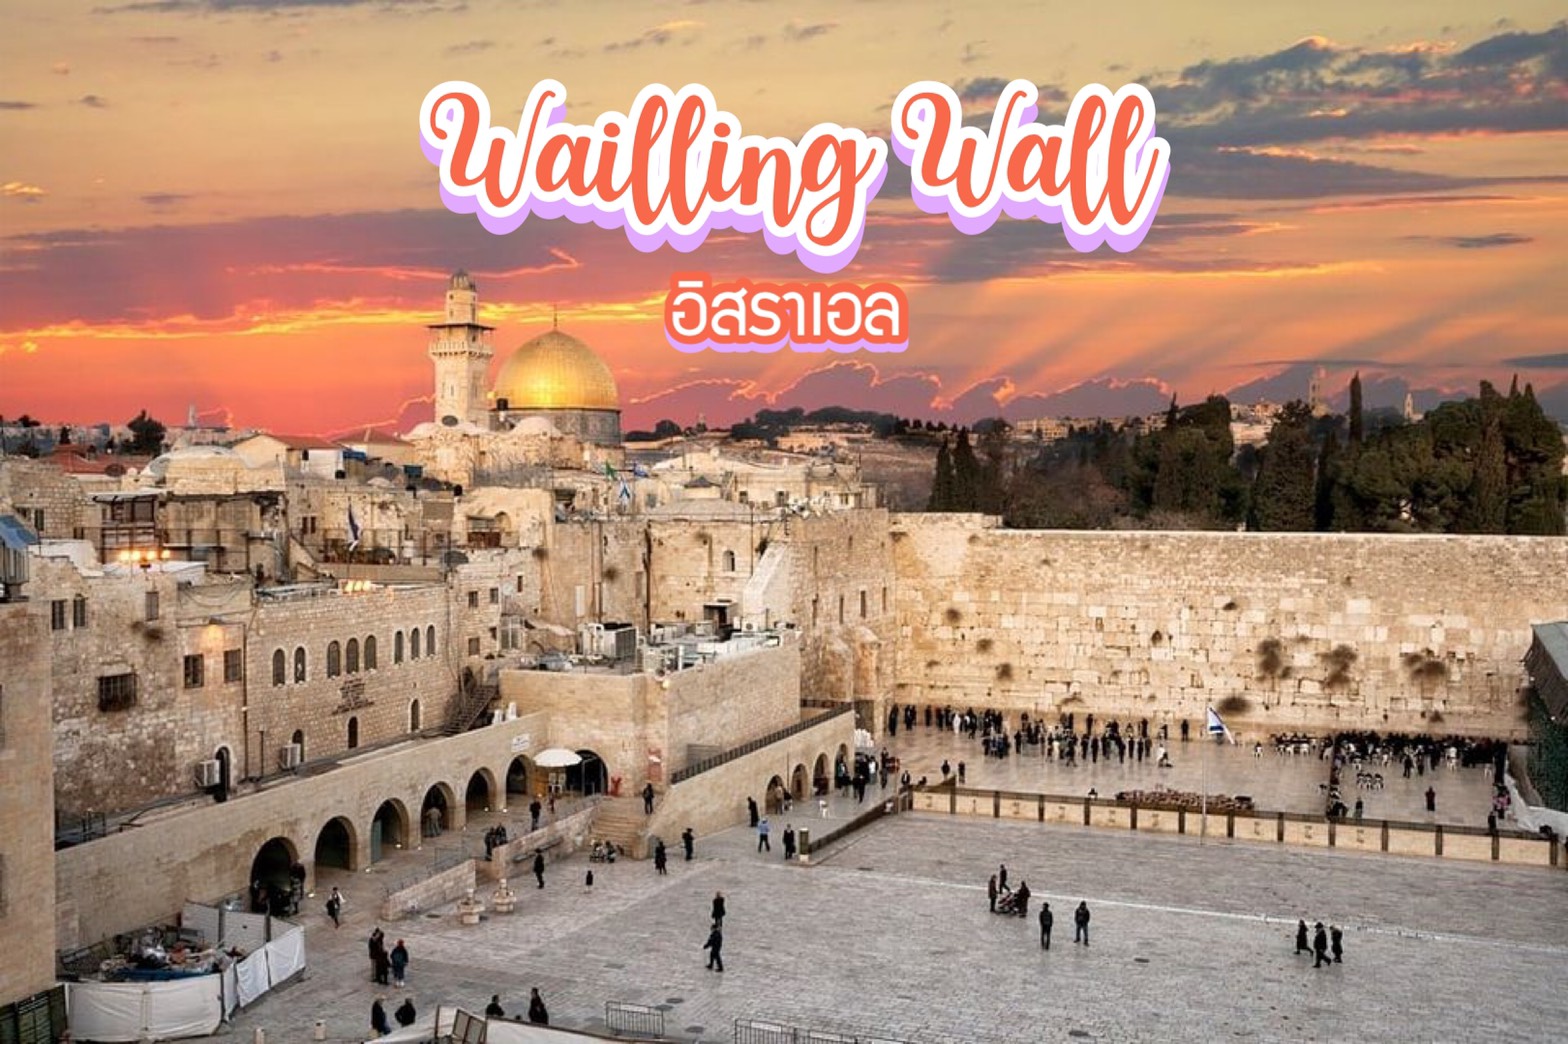 กำแพงร้องไห้ Wailling Wall อิสราเอล